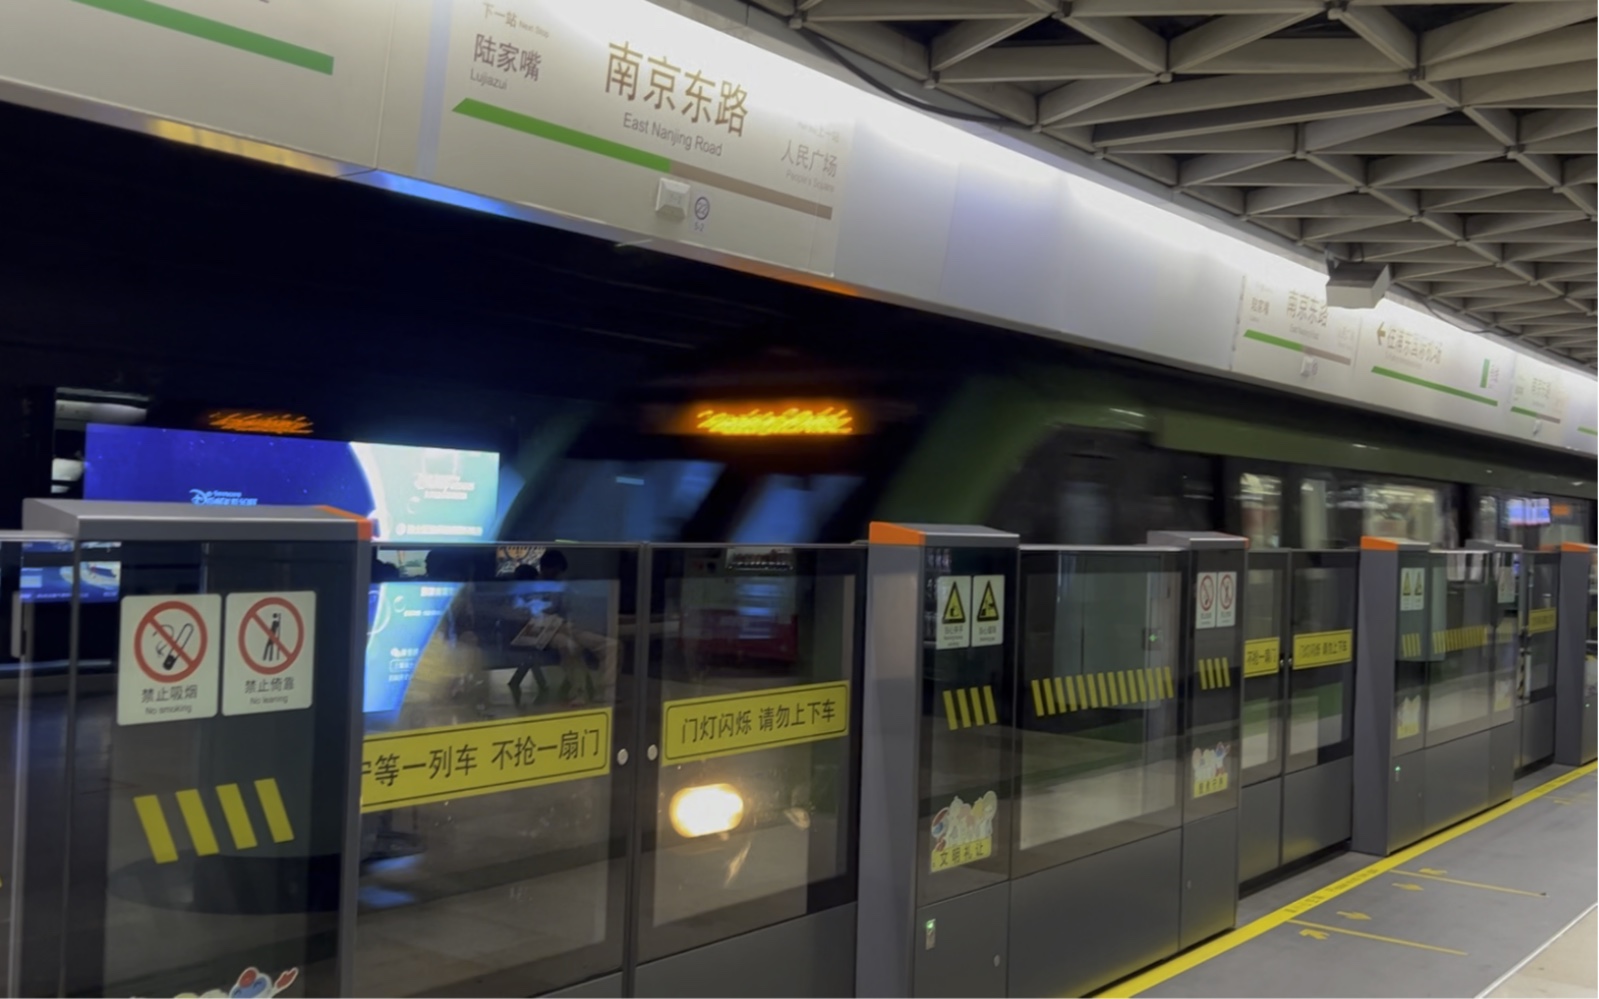 (上海地铁)2号线青鱼广兰路方向进南京东路站